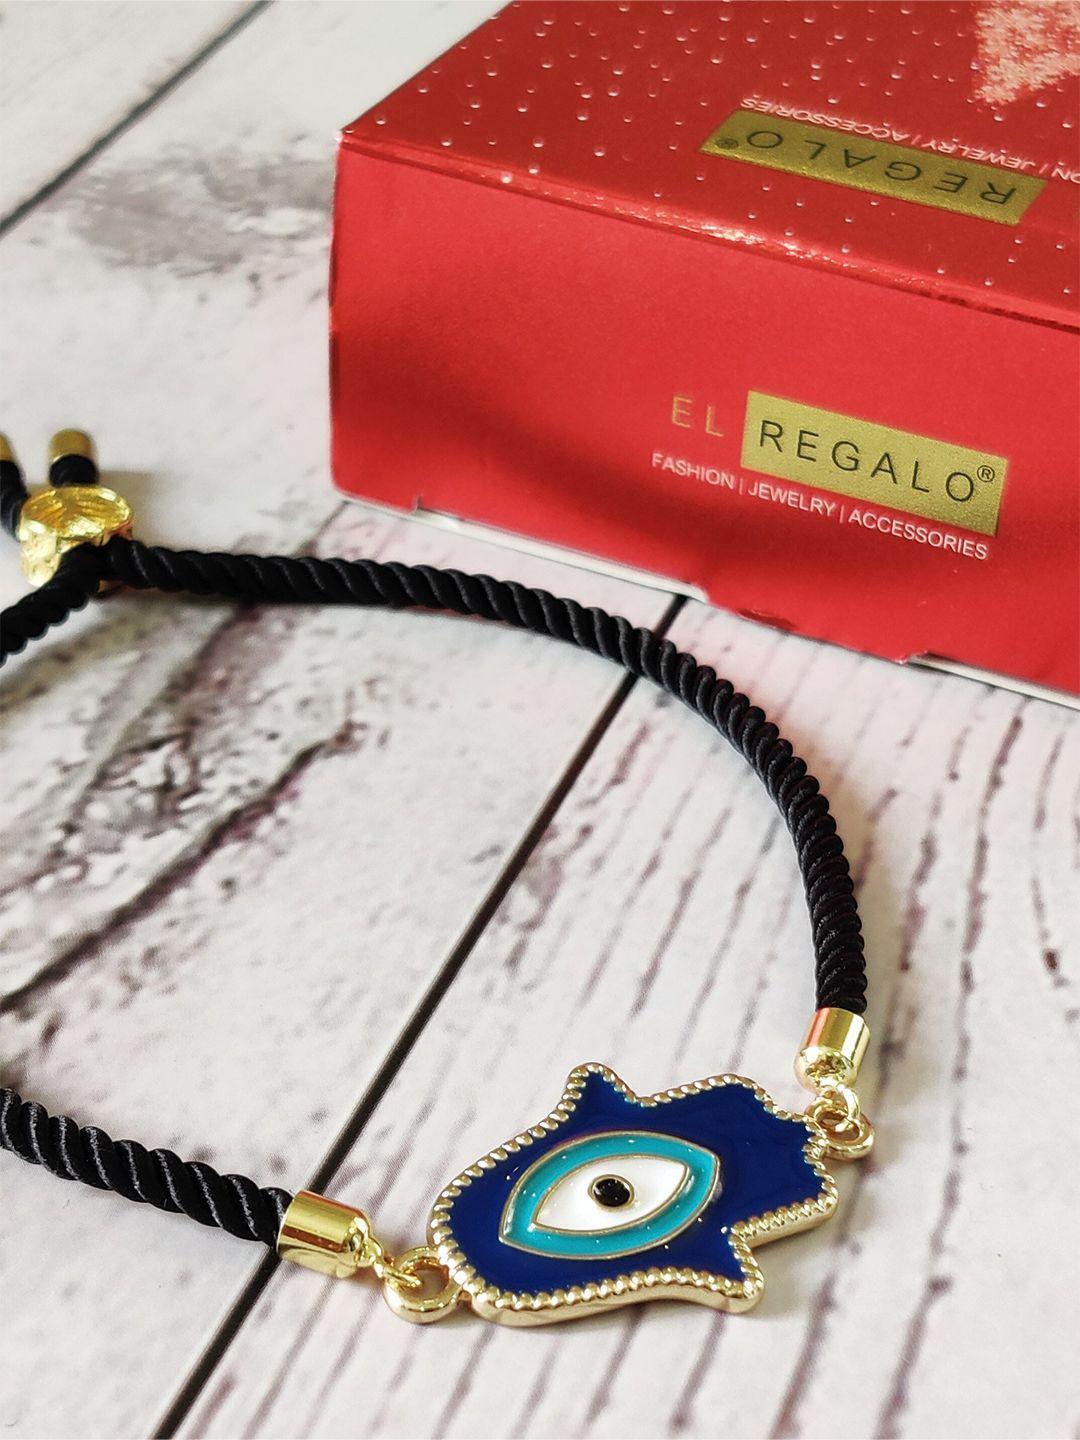 el regalo unisex gold-toned & blue gold-plated evil eye charm bracelet